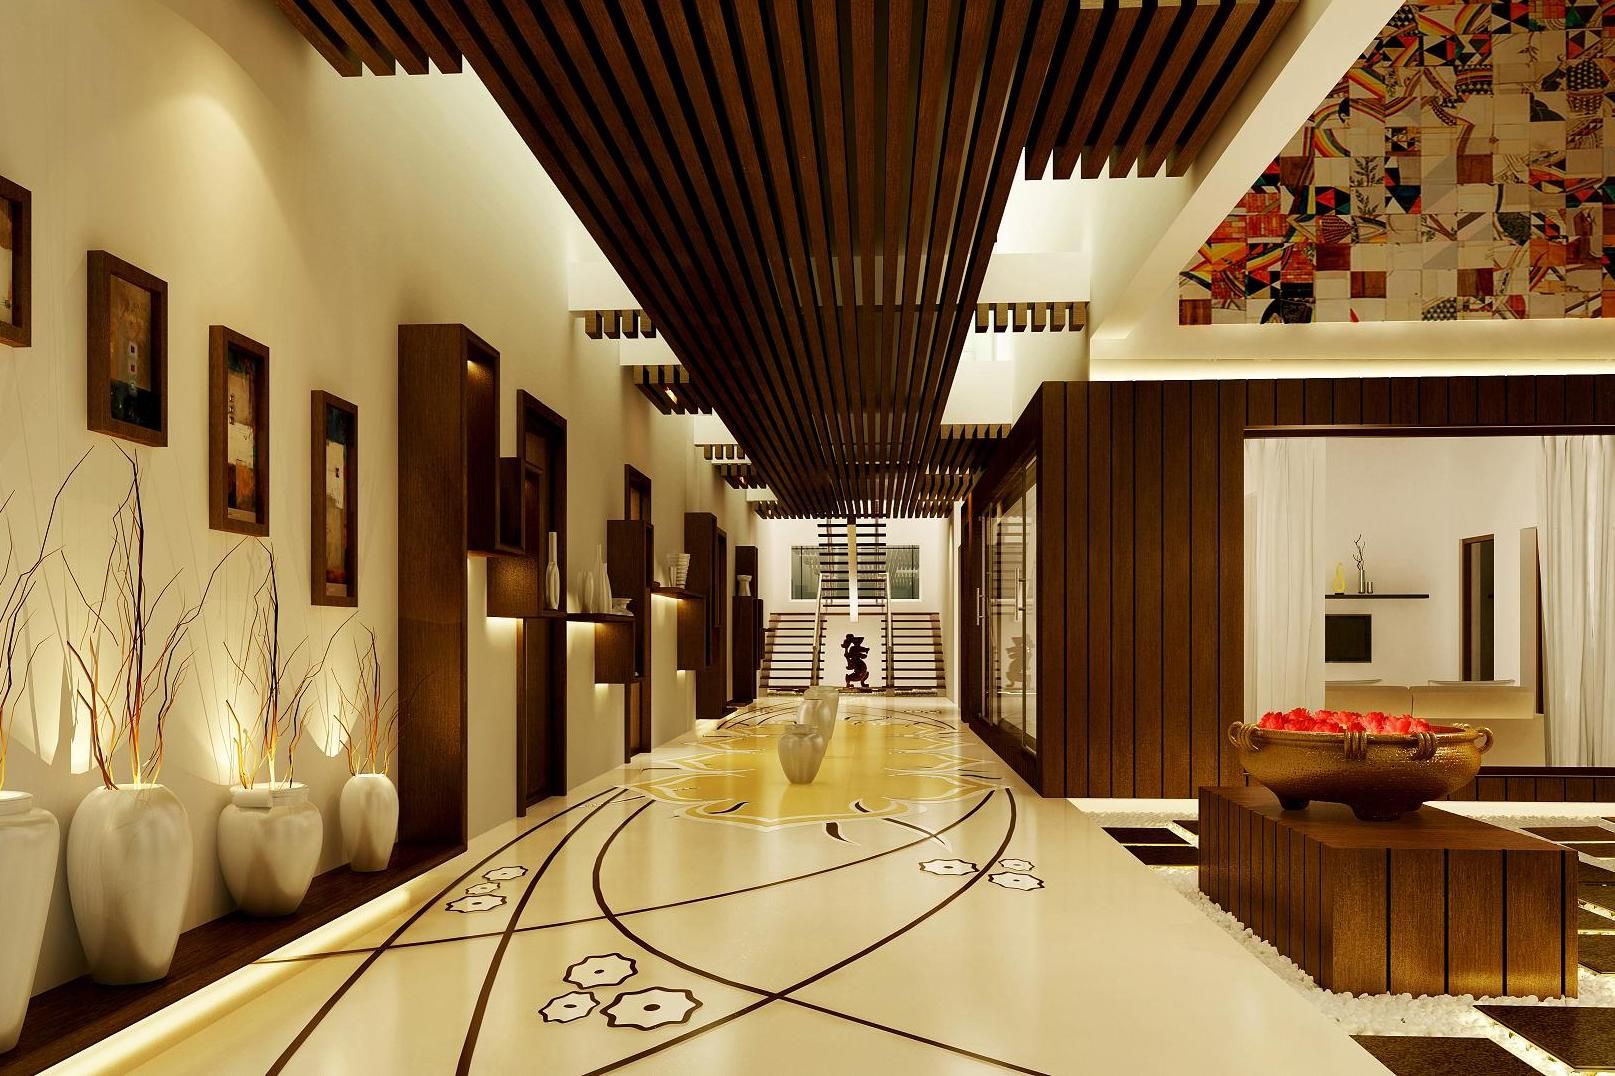 Mr. Ramesh Residence at Neyveli, Dwellion Dwellion Pasillos, vestíbulos y escaleras de estilo moderno